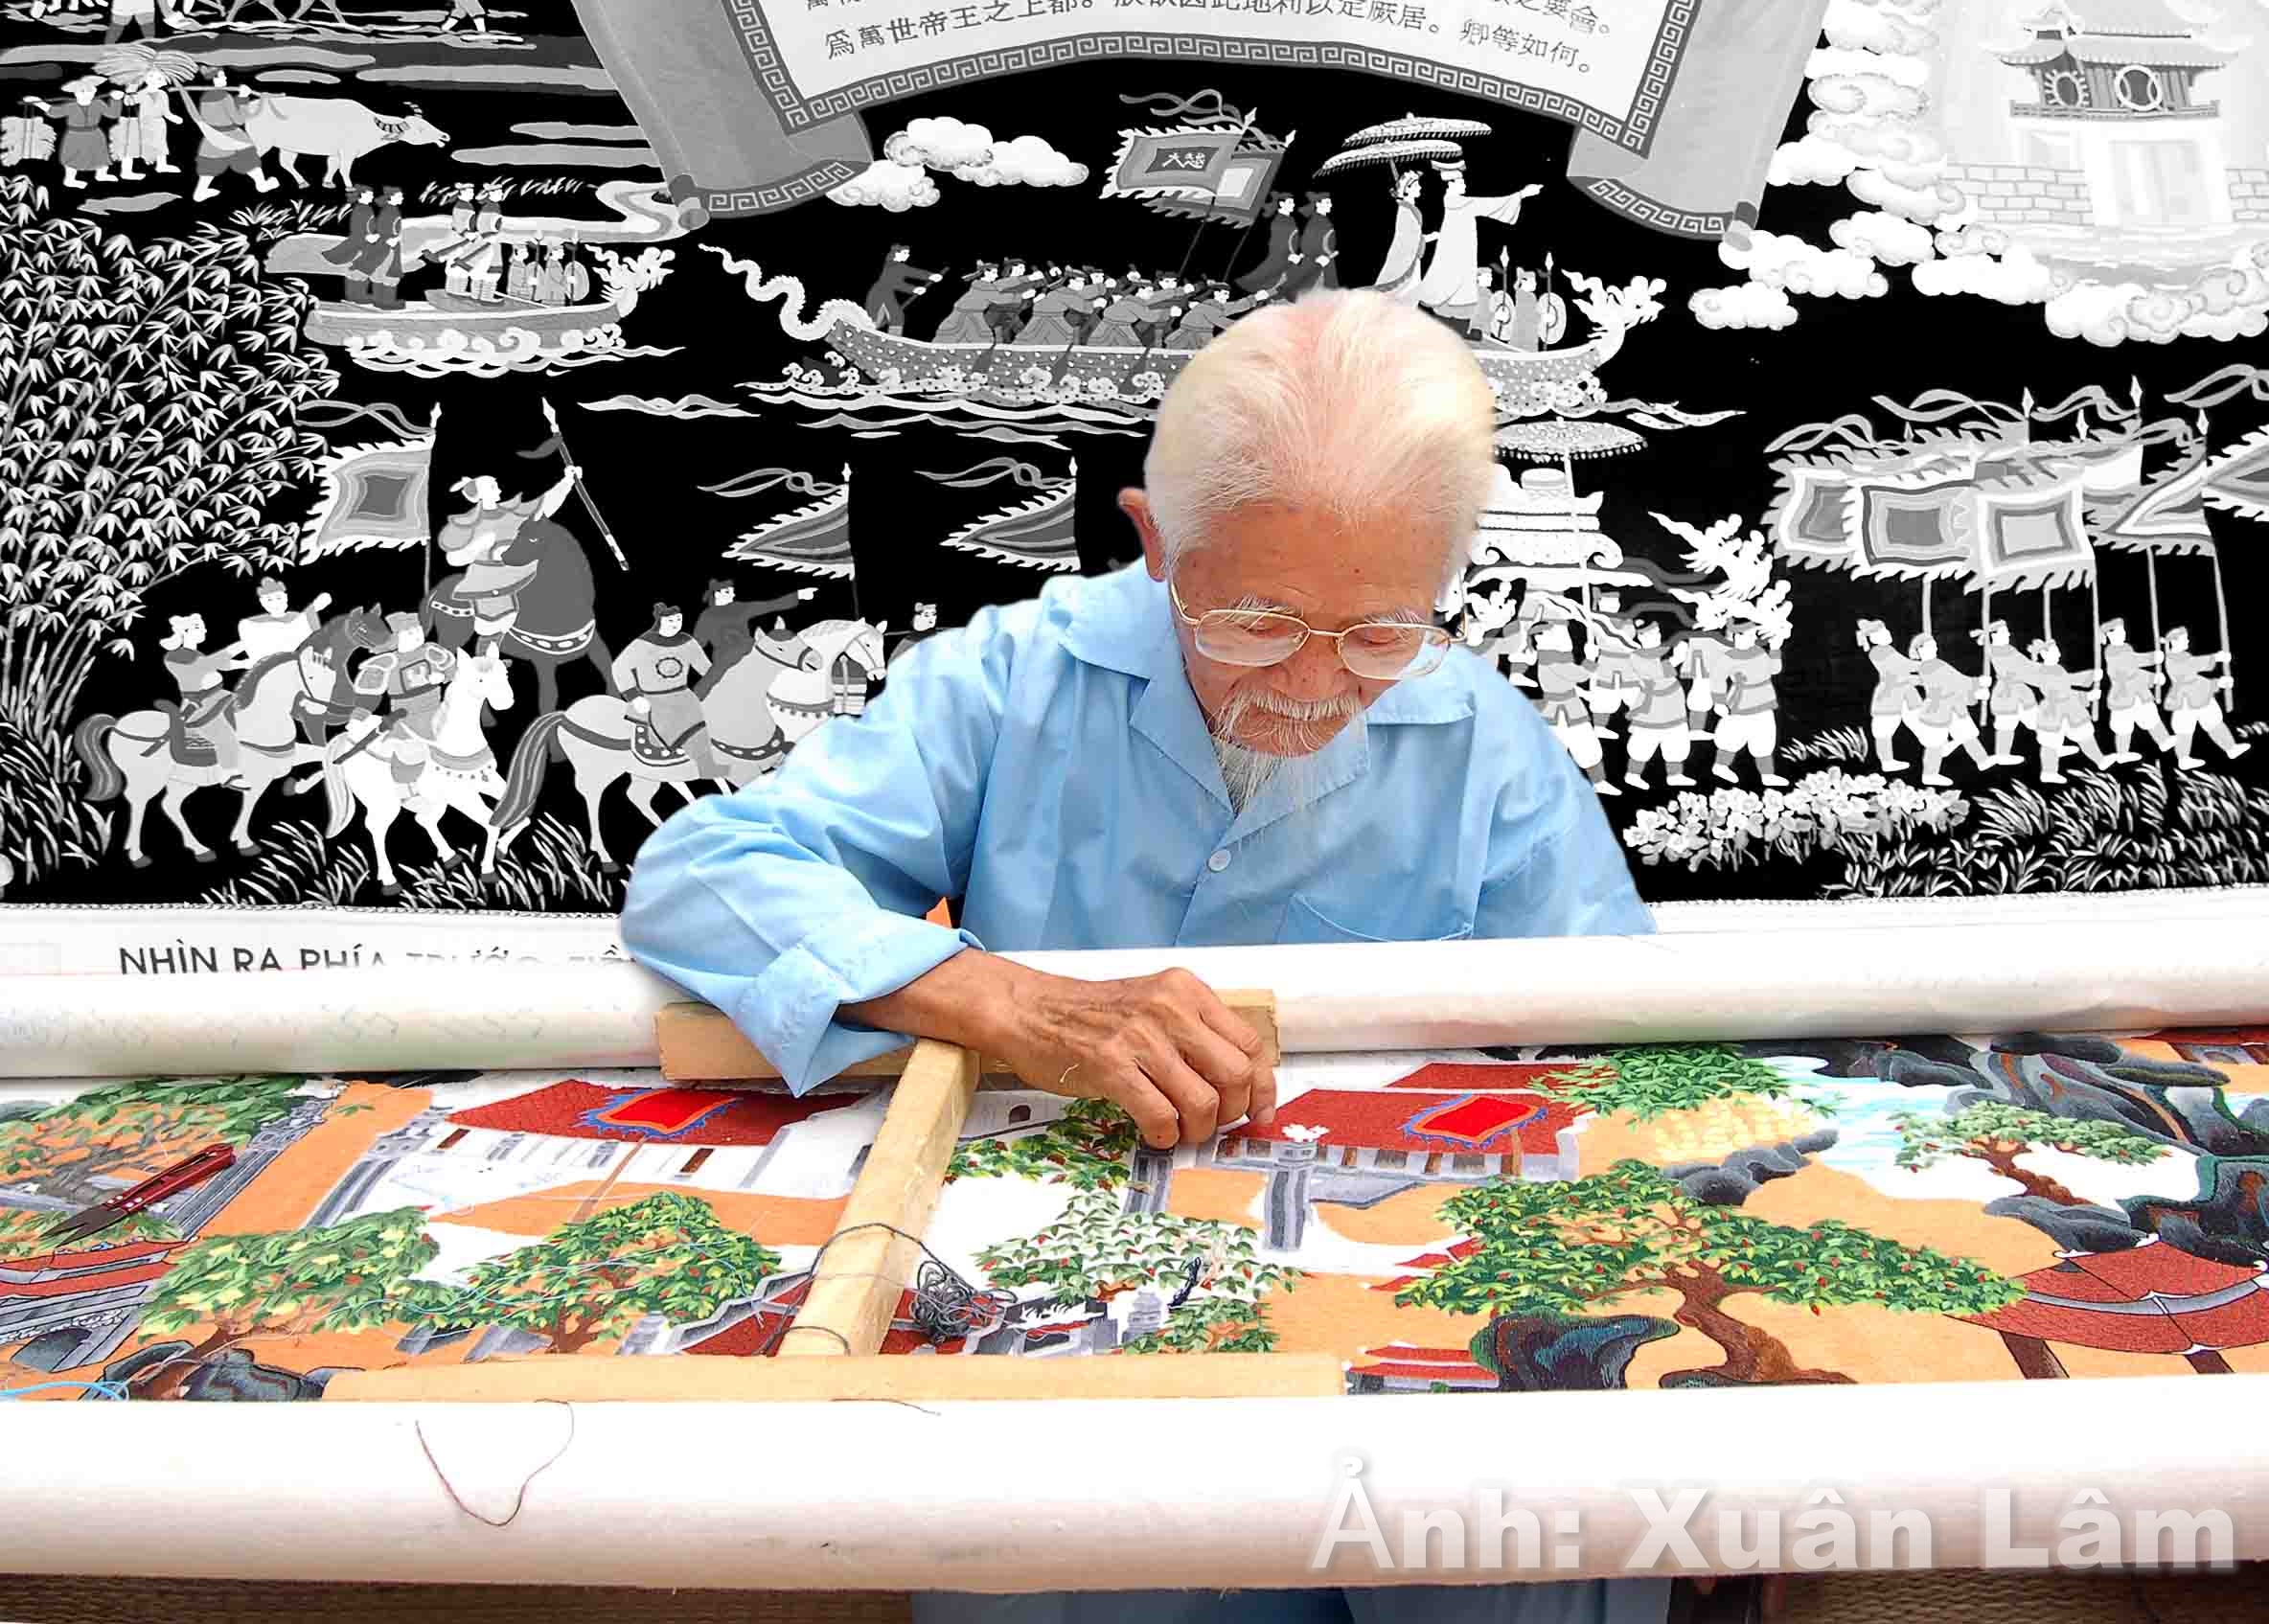 Thêu ren Văn Lâm – Nơi hội tụ tinh hoa nghề thêu ren truyền thống